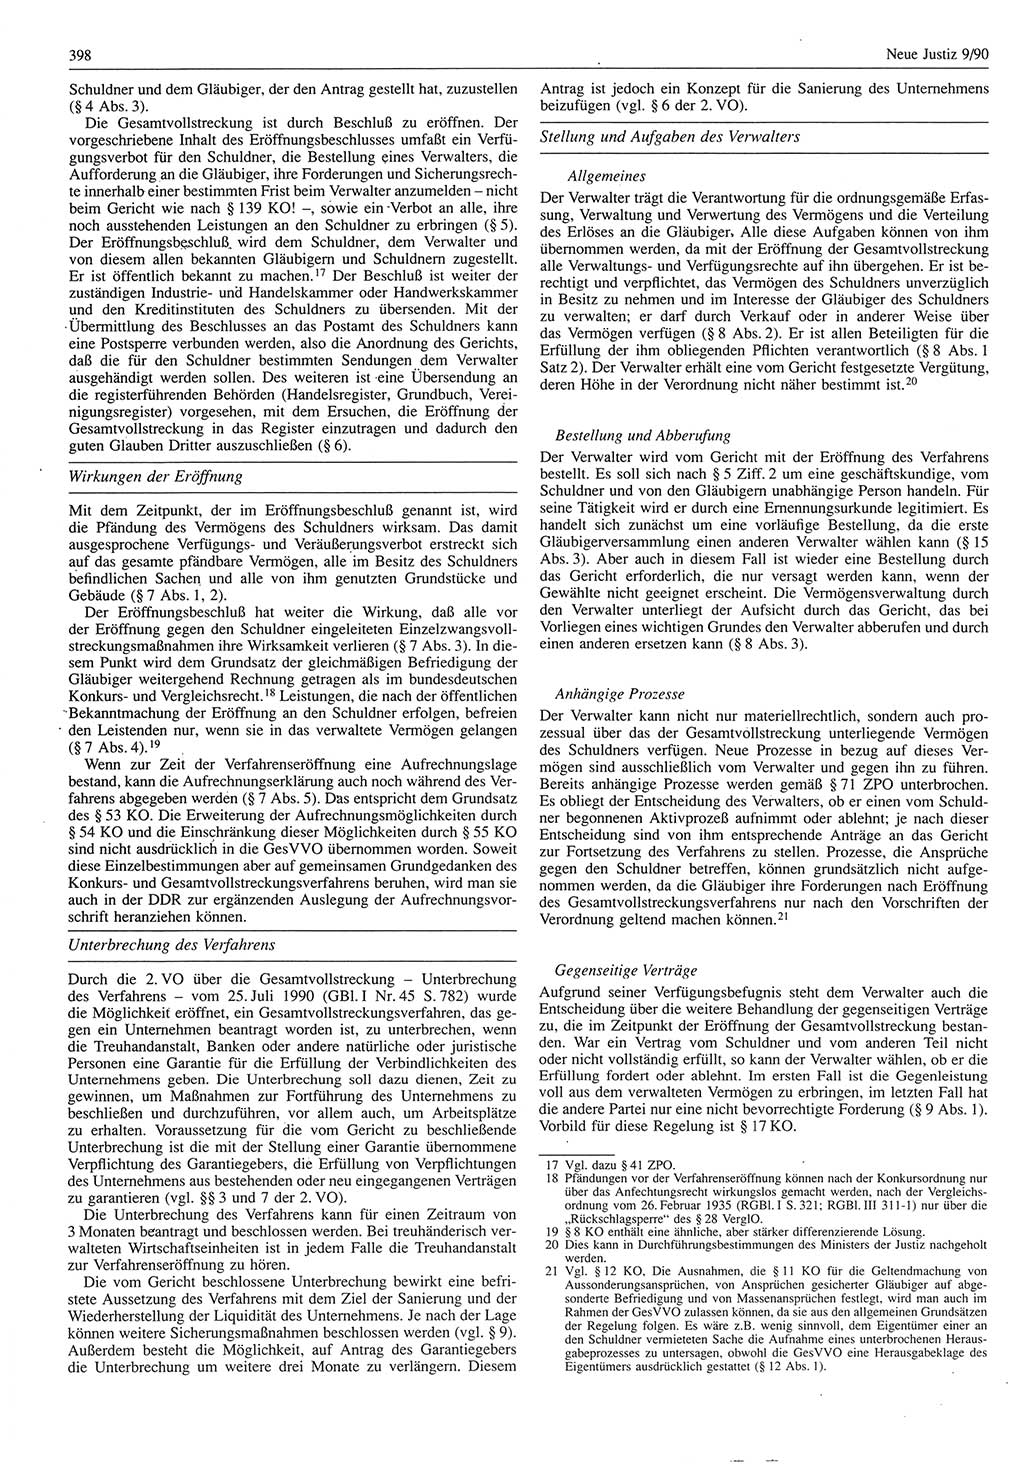 Neue Justiz (NJ), Zeitschrift für Rechtsetzung und Rechtsanwendung [Deutsche Demokratische Republik (DDR)], 44. Jahrgang 1990, Seite 398 (NJ DDR 1990, S. 398)